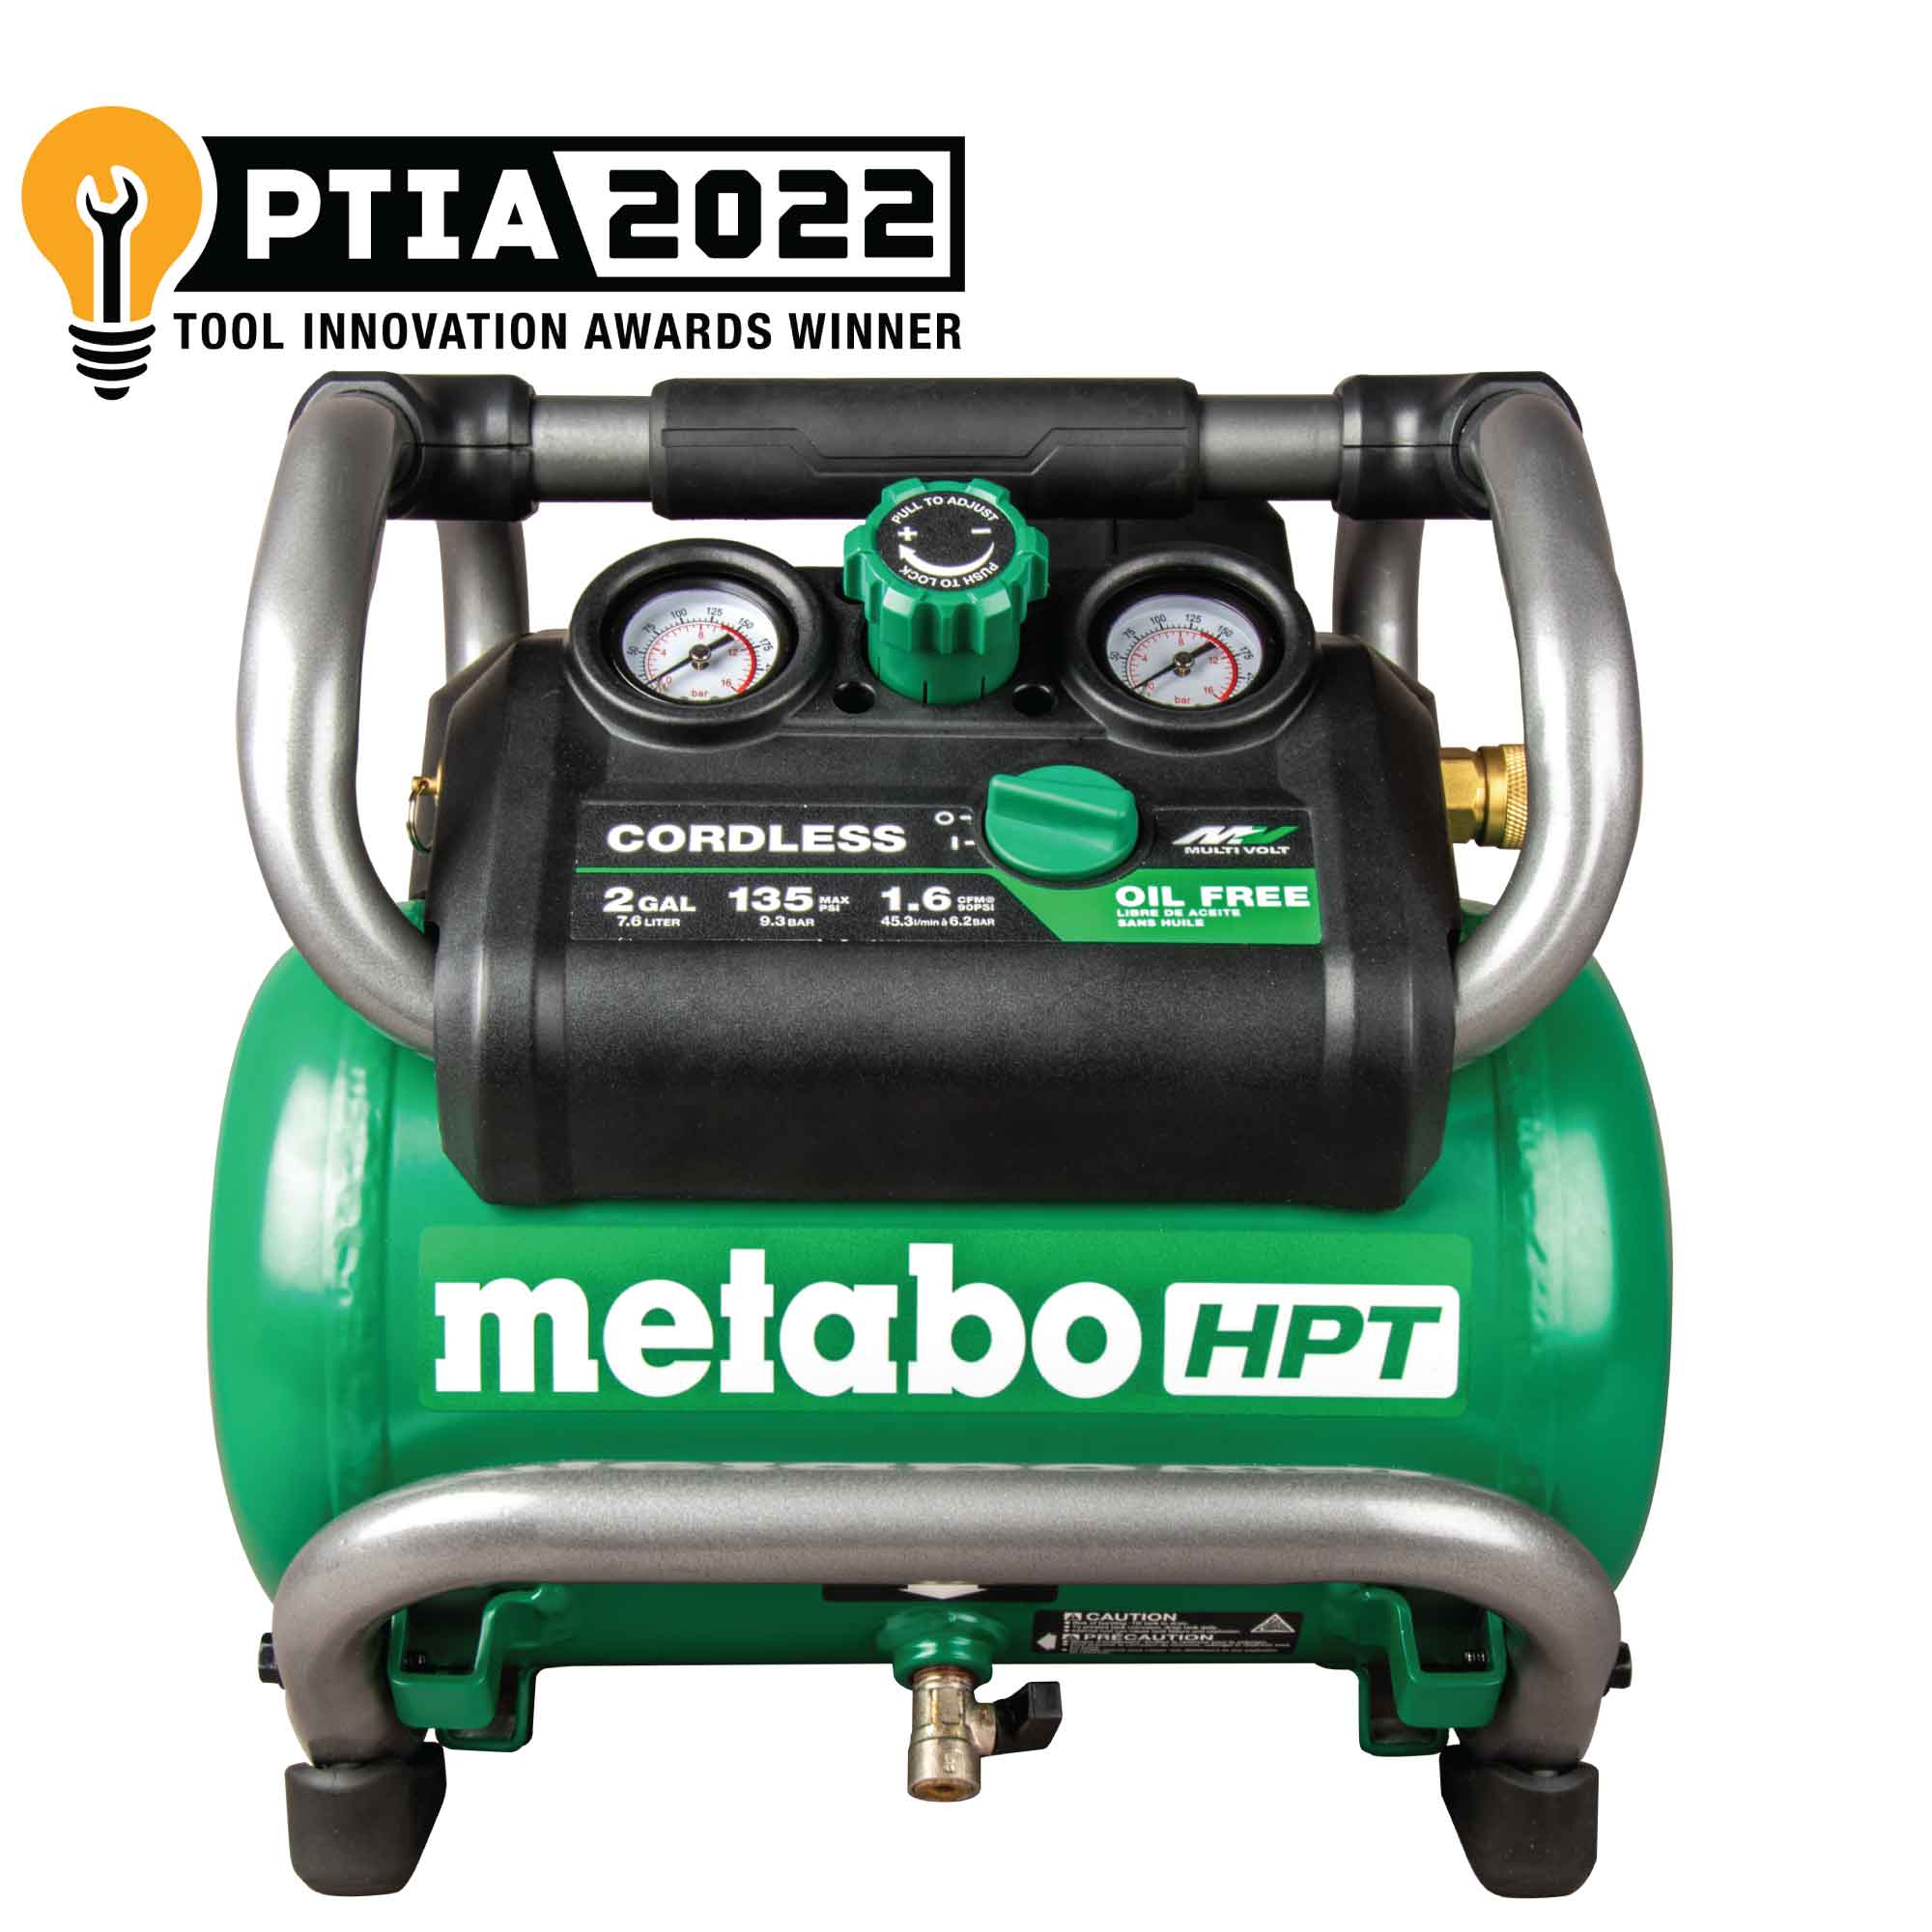 Metabo HPT EC36DAQ4M 36V MultiVolt 2 Gallon Cordless Compressor